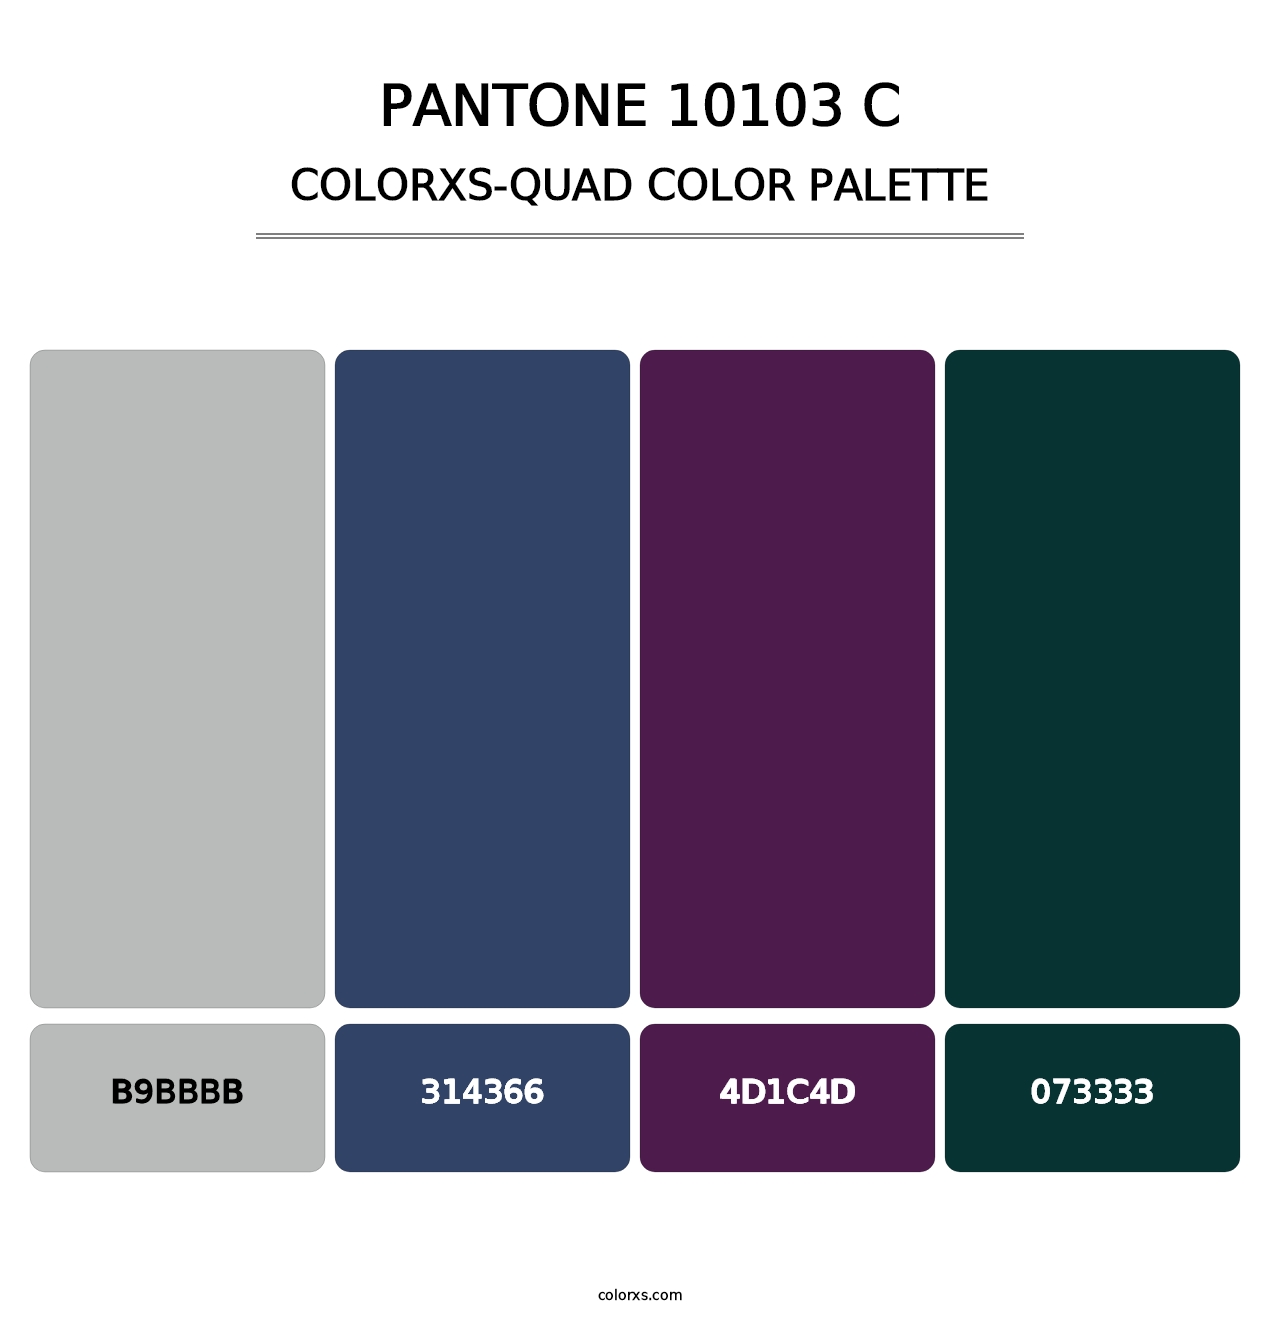 PANTONE 10103 C - Colorxs Quad Palette